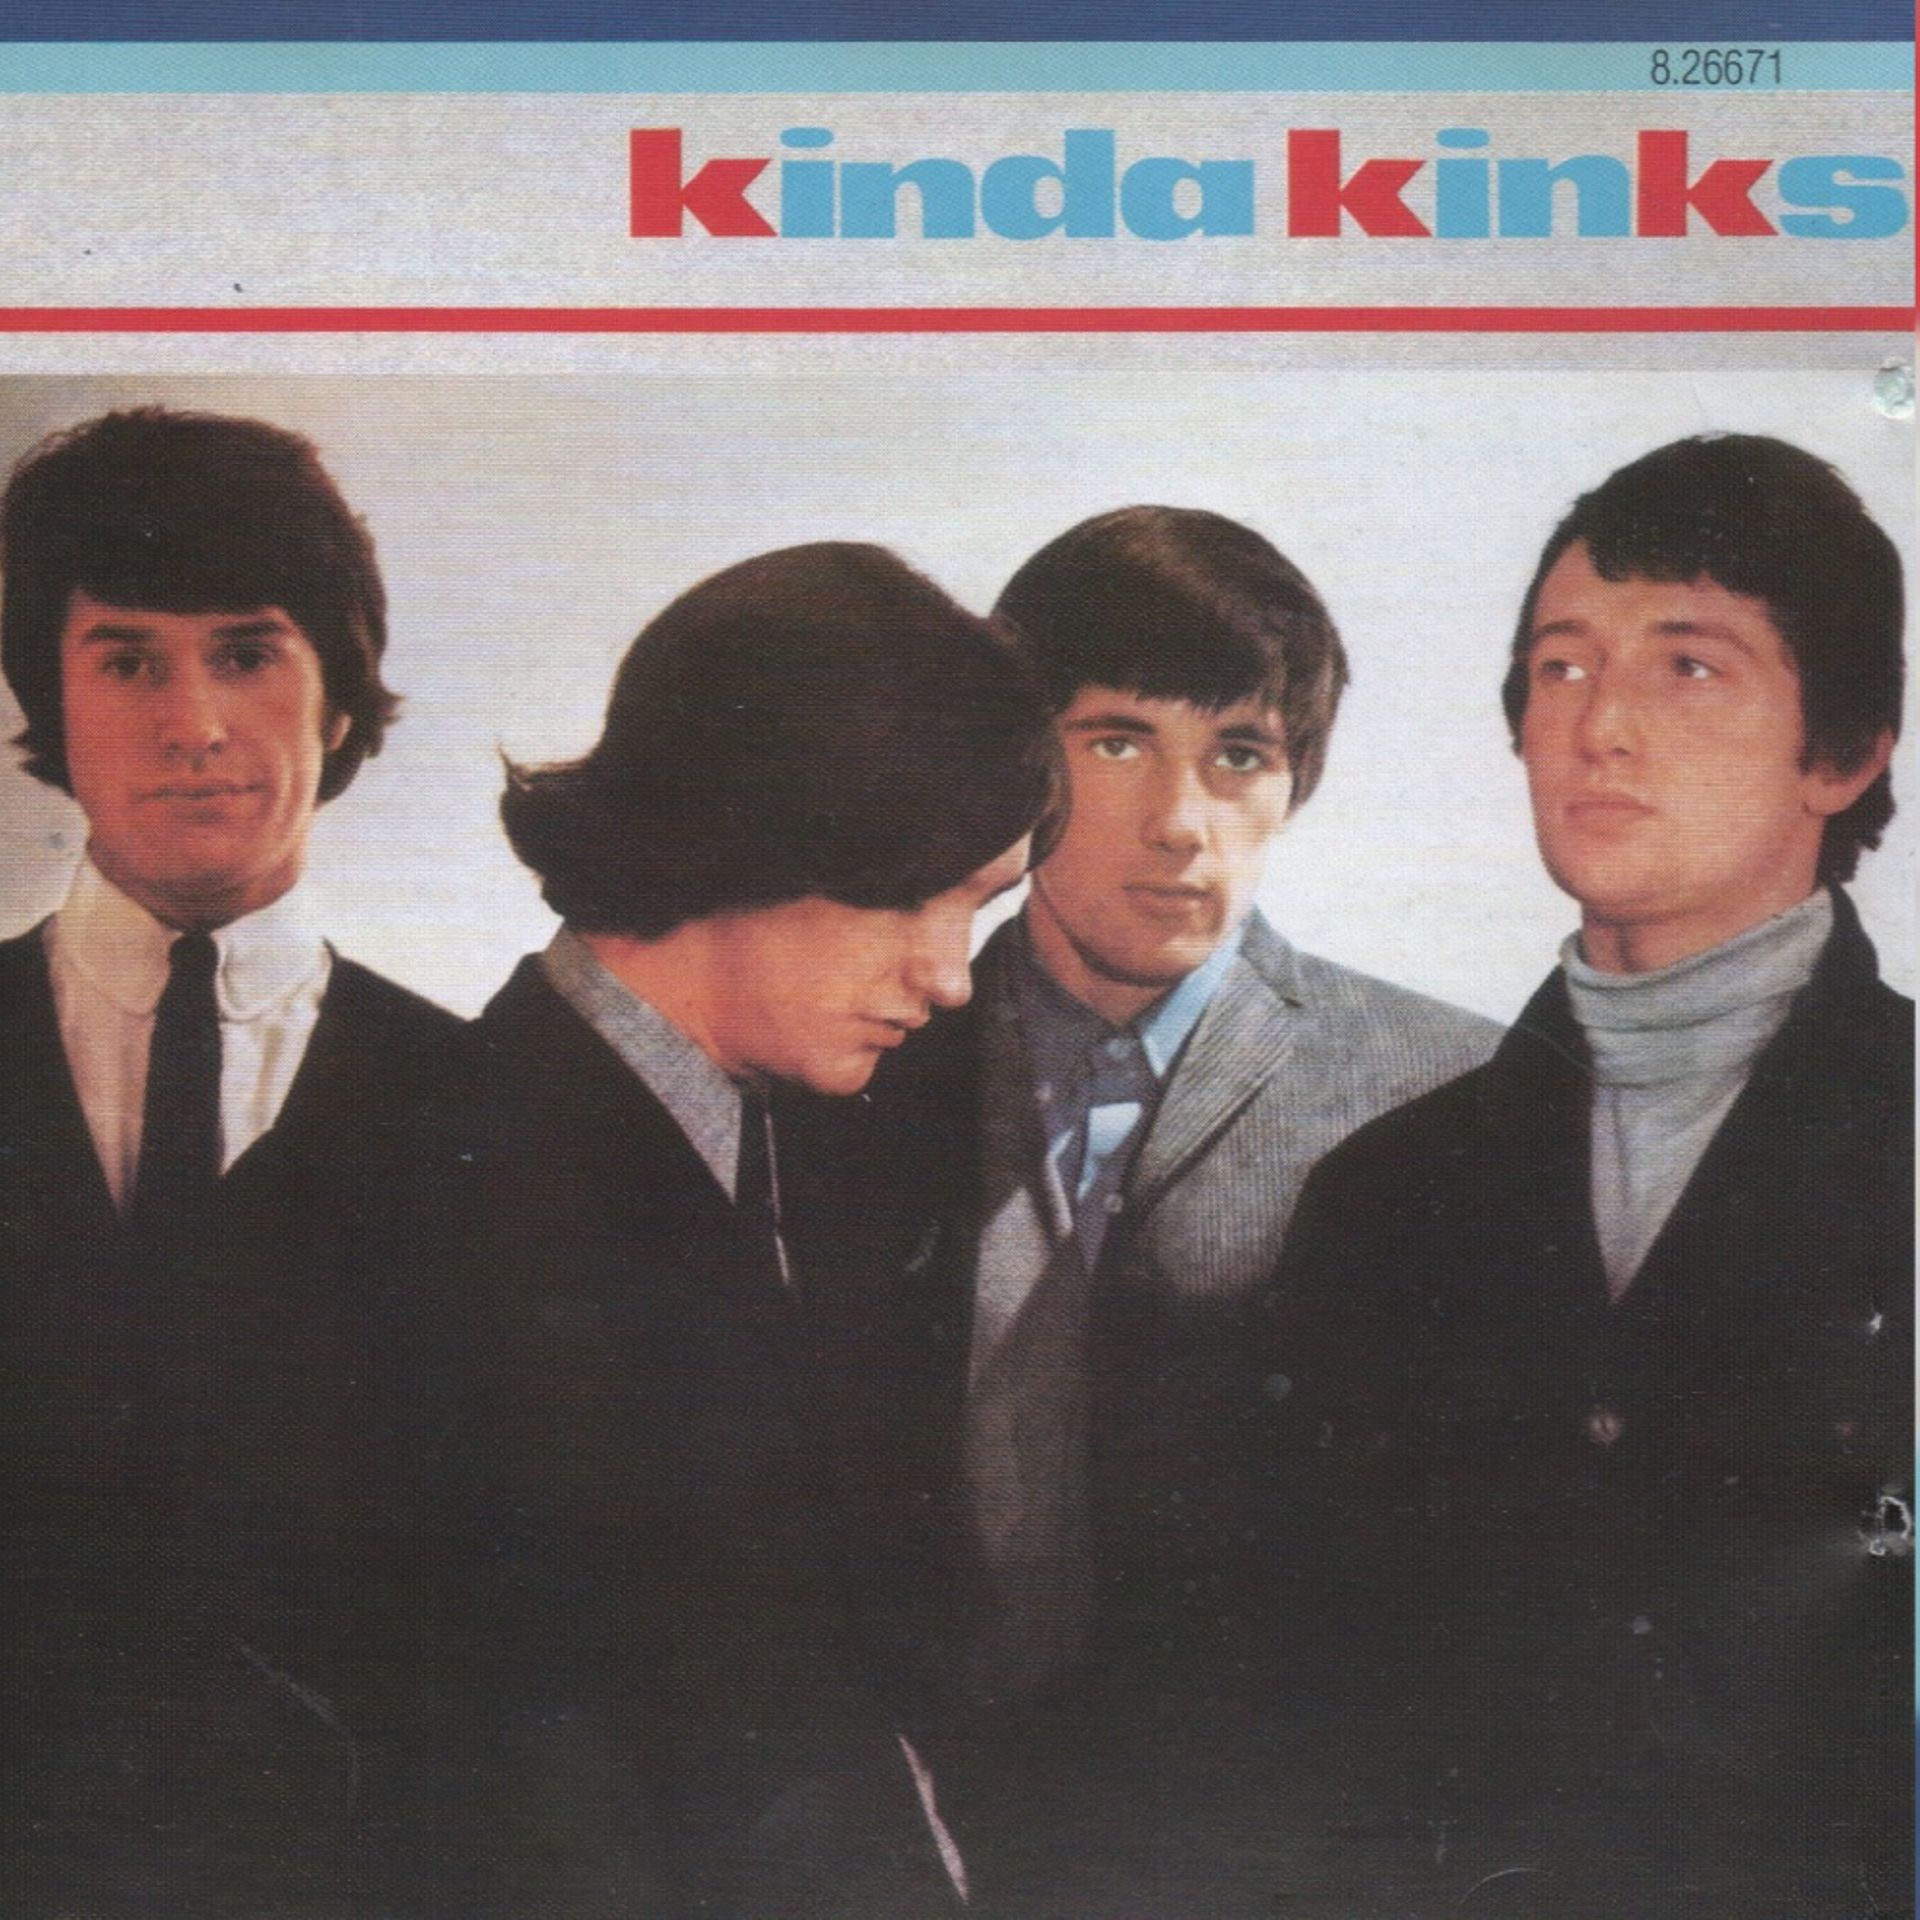 KINKS - KINDA KINKS - LP